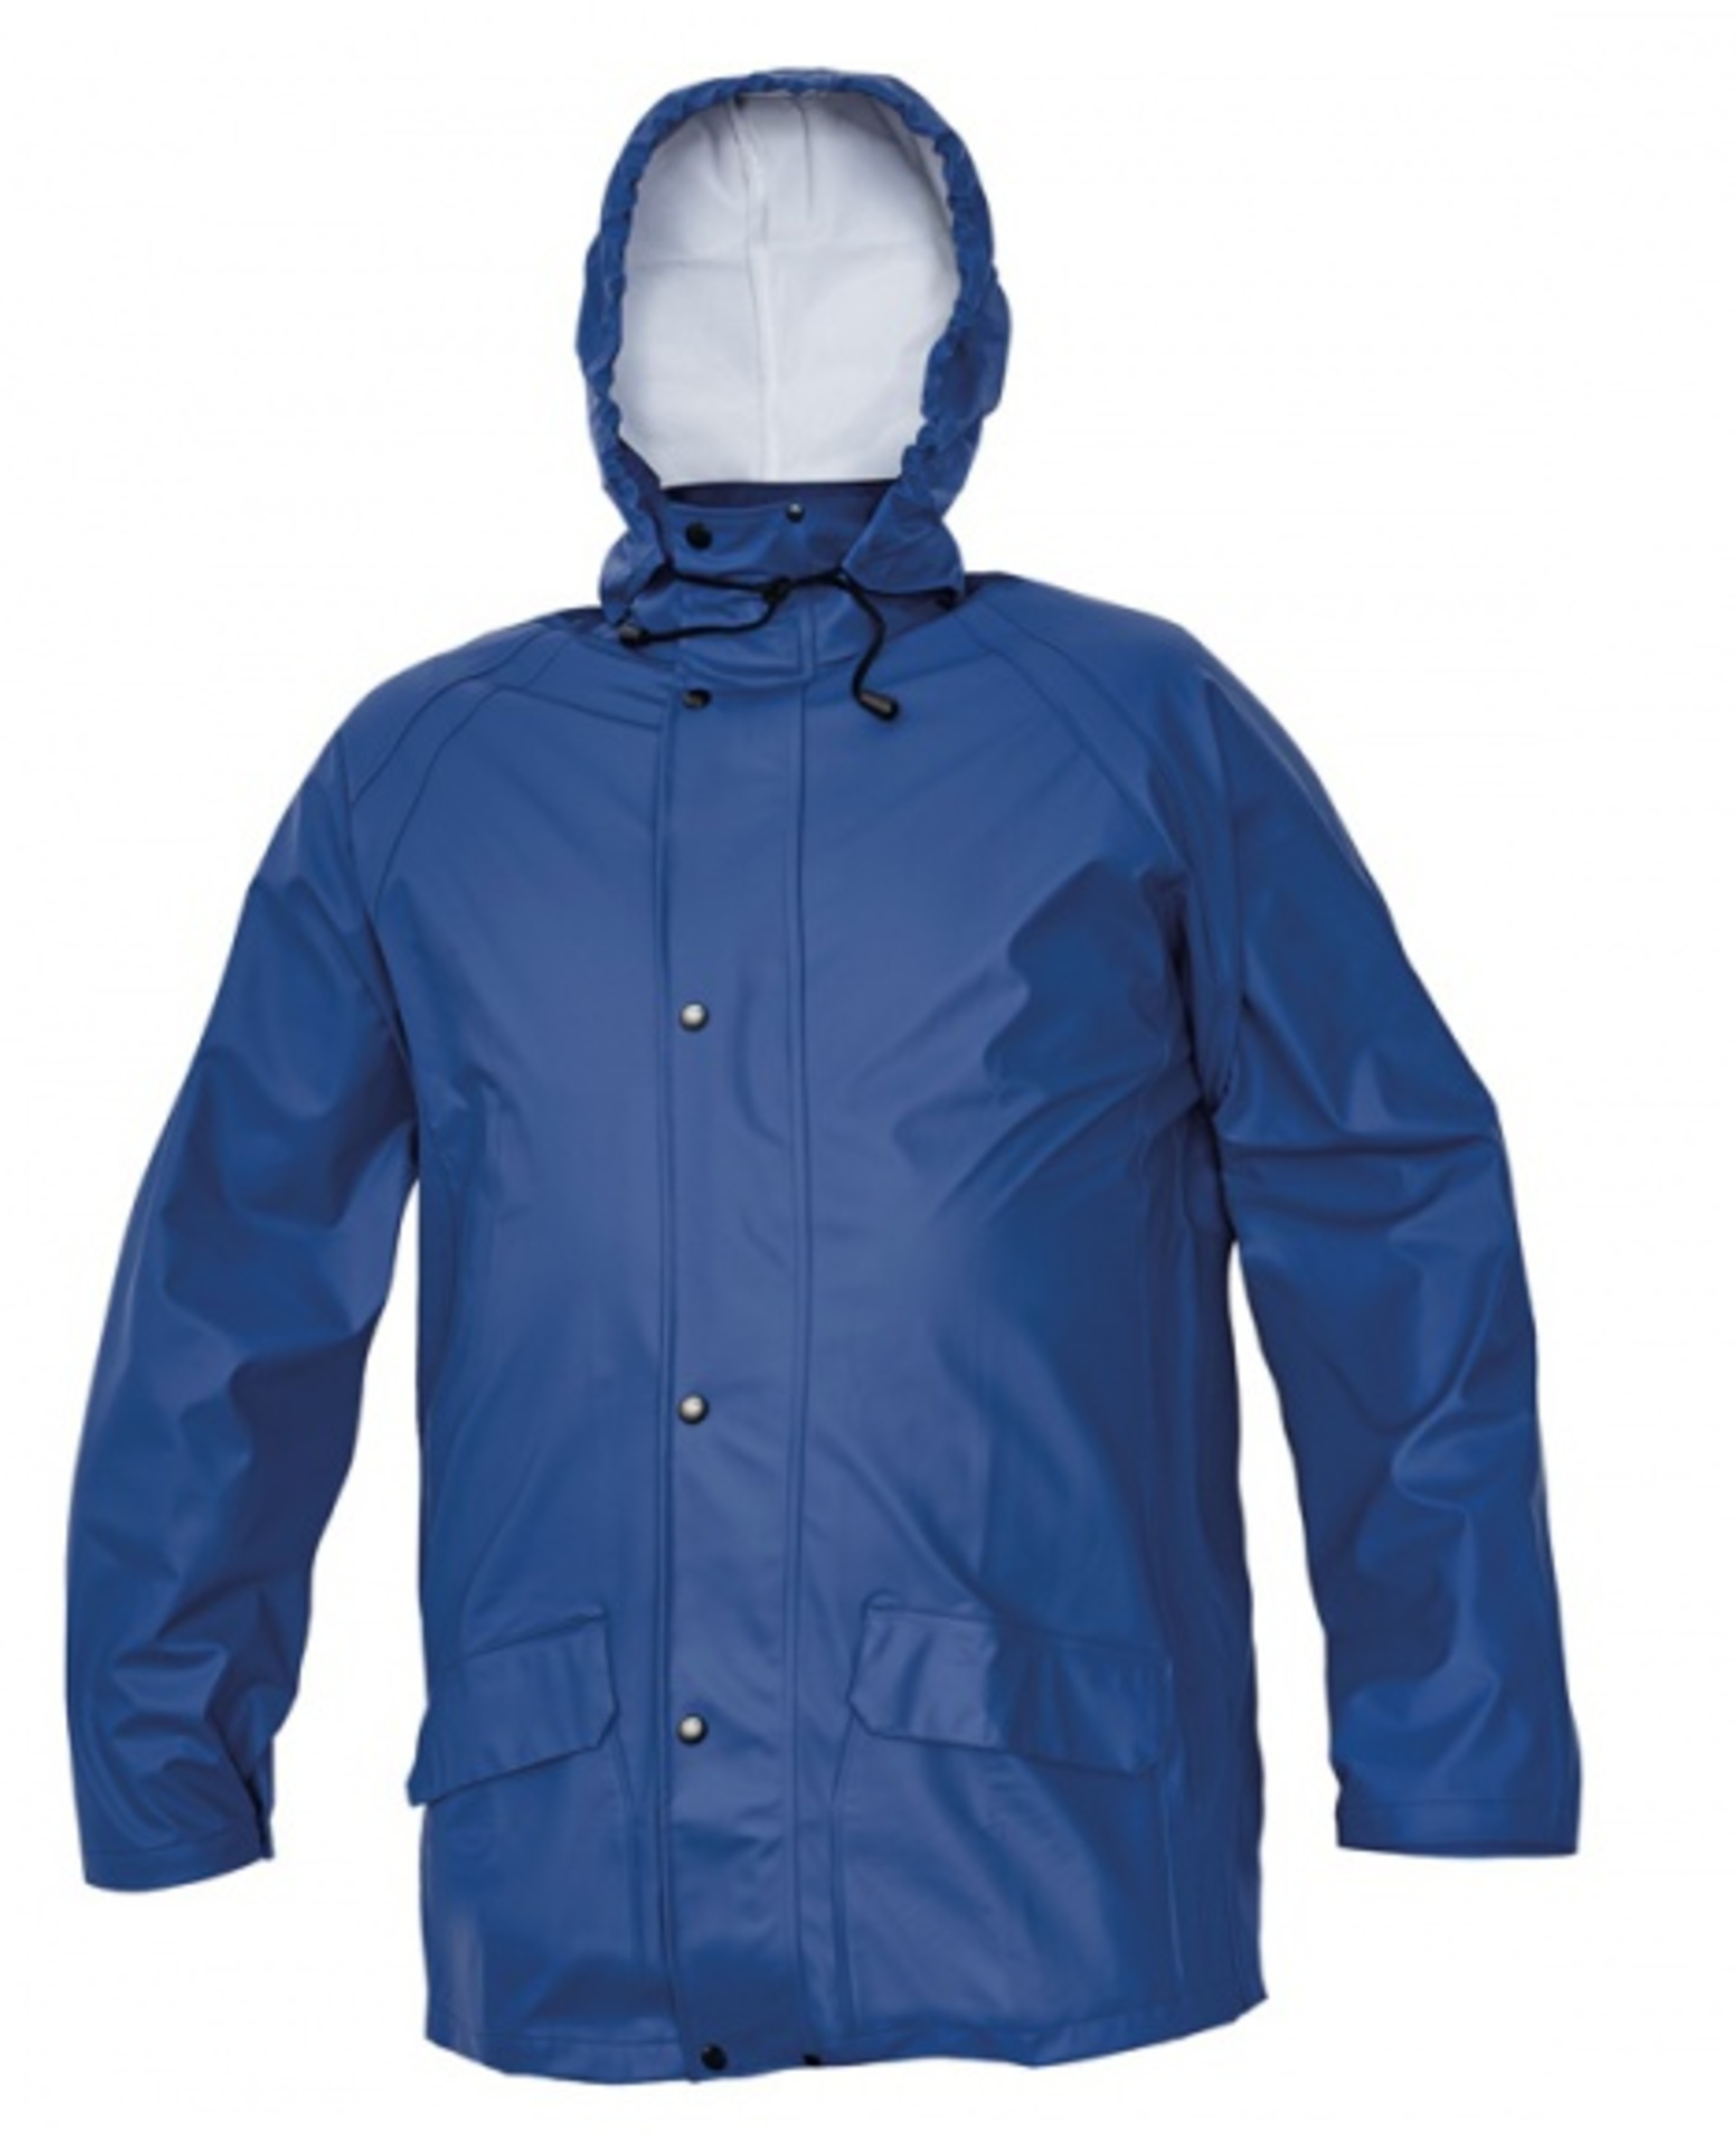 Cerva SIRET SET Oblek nepromokavý námořnická modrá L + Bezplatné vrácení zboží